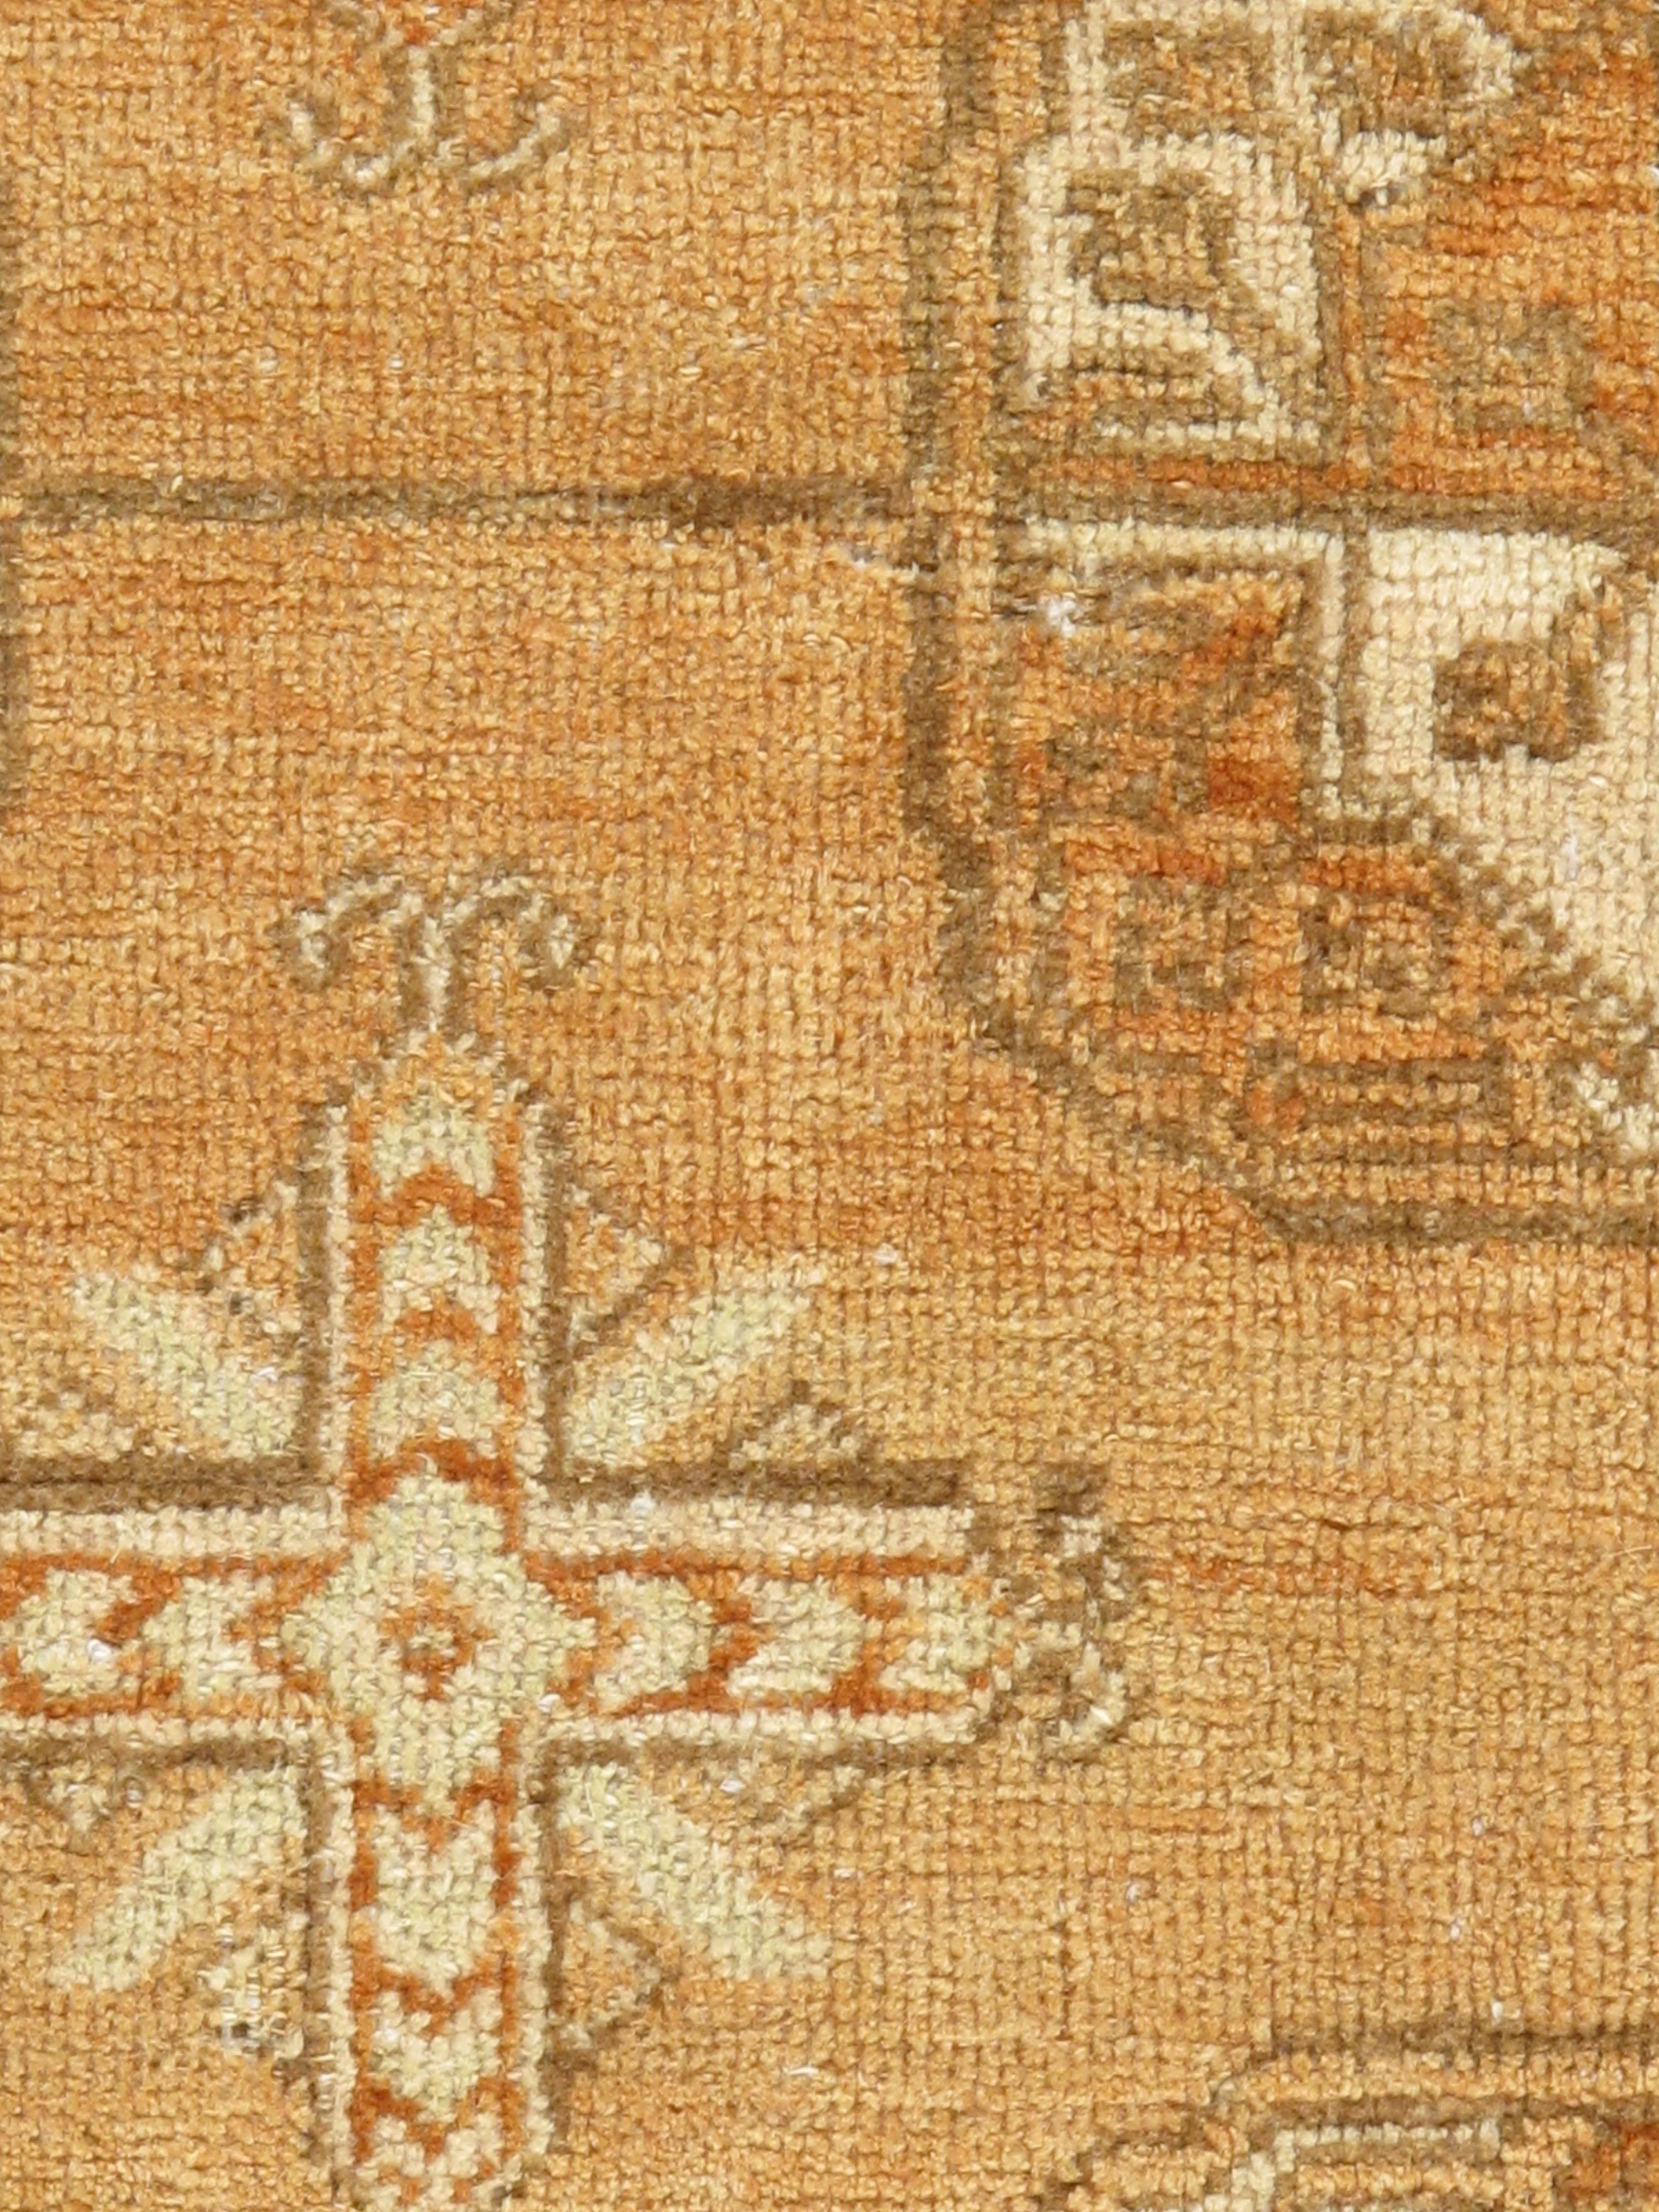 20th Century Antique Khotan Carpet Rug